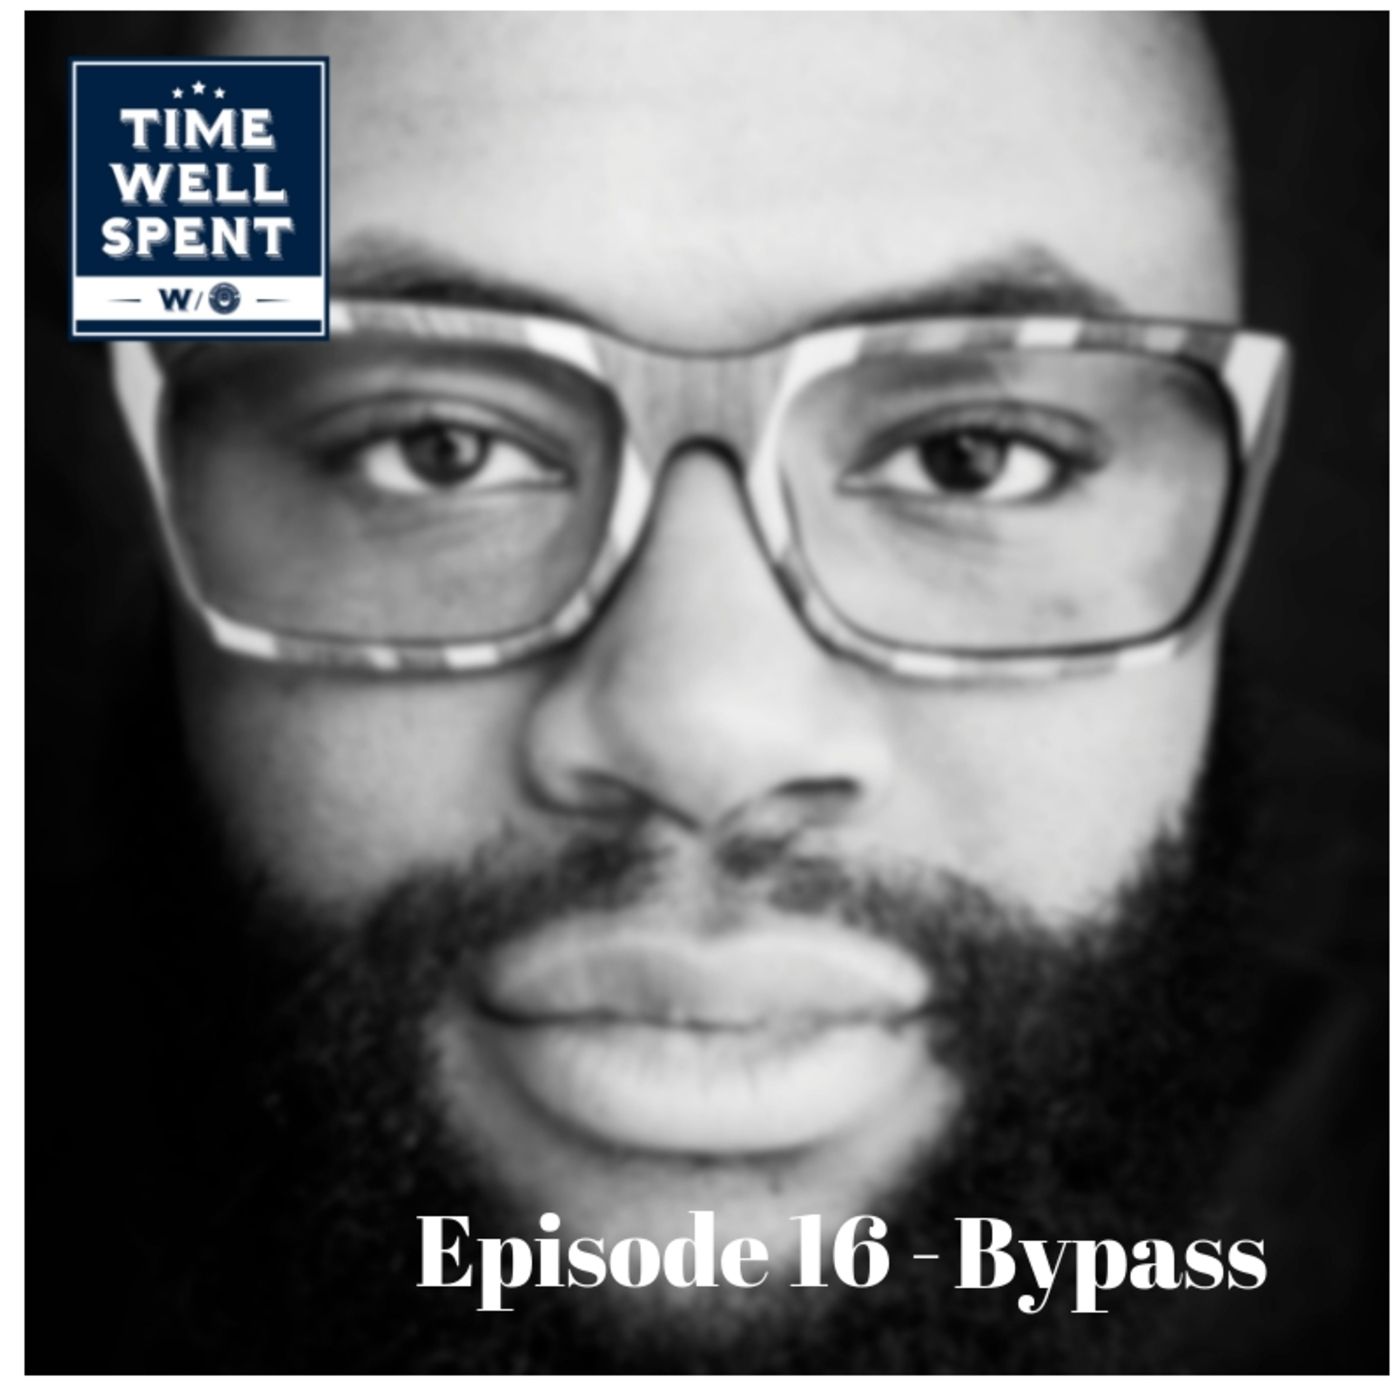 Episode 16 - Bypass